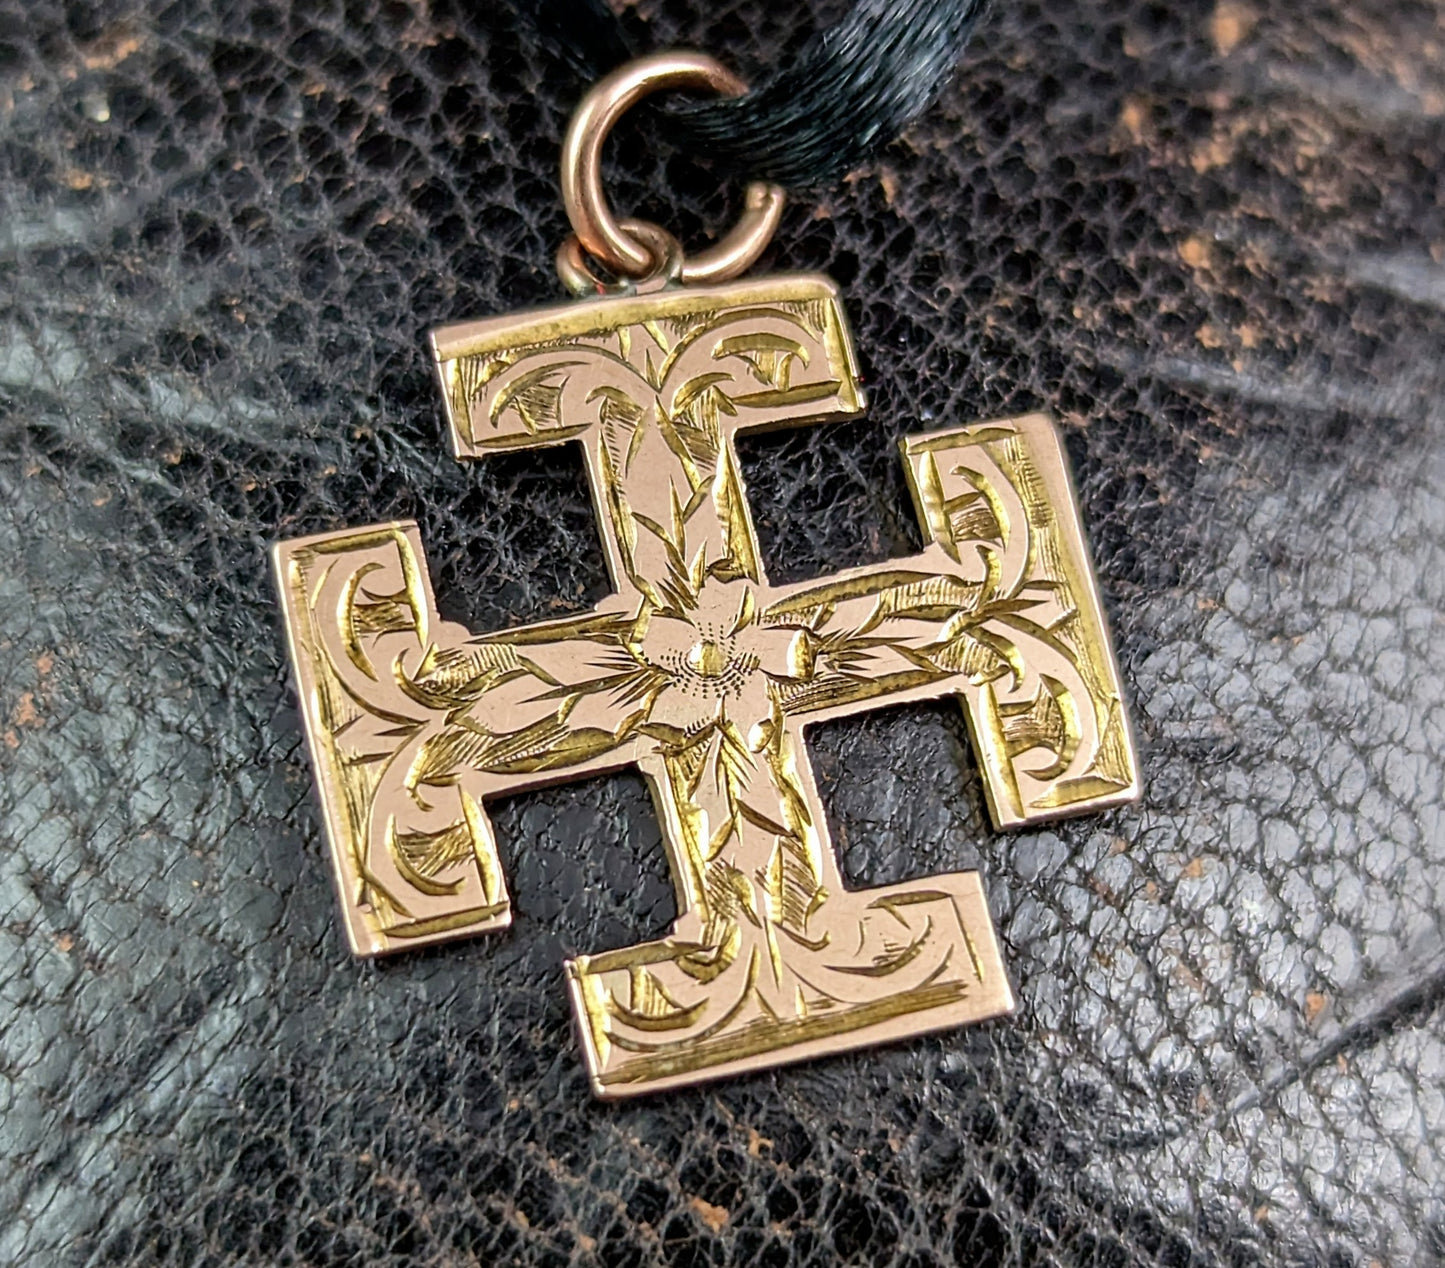 Antique 9k gold Jerusalem cross pendant, engraved